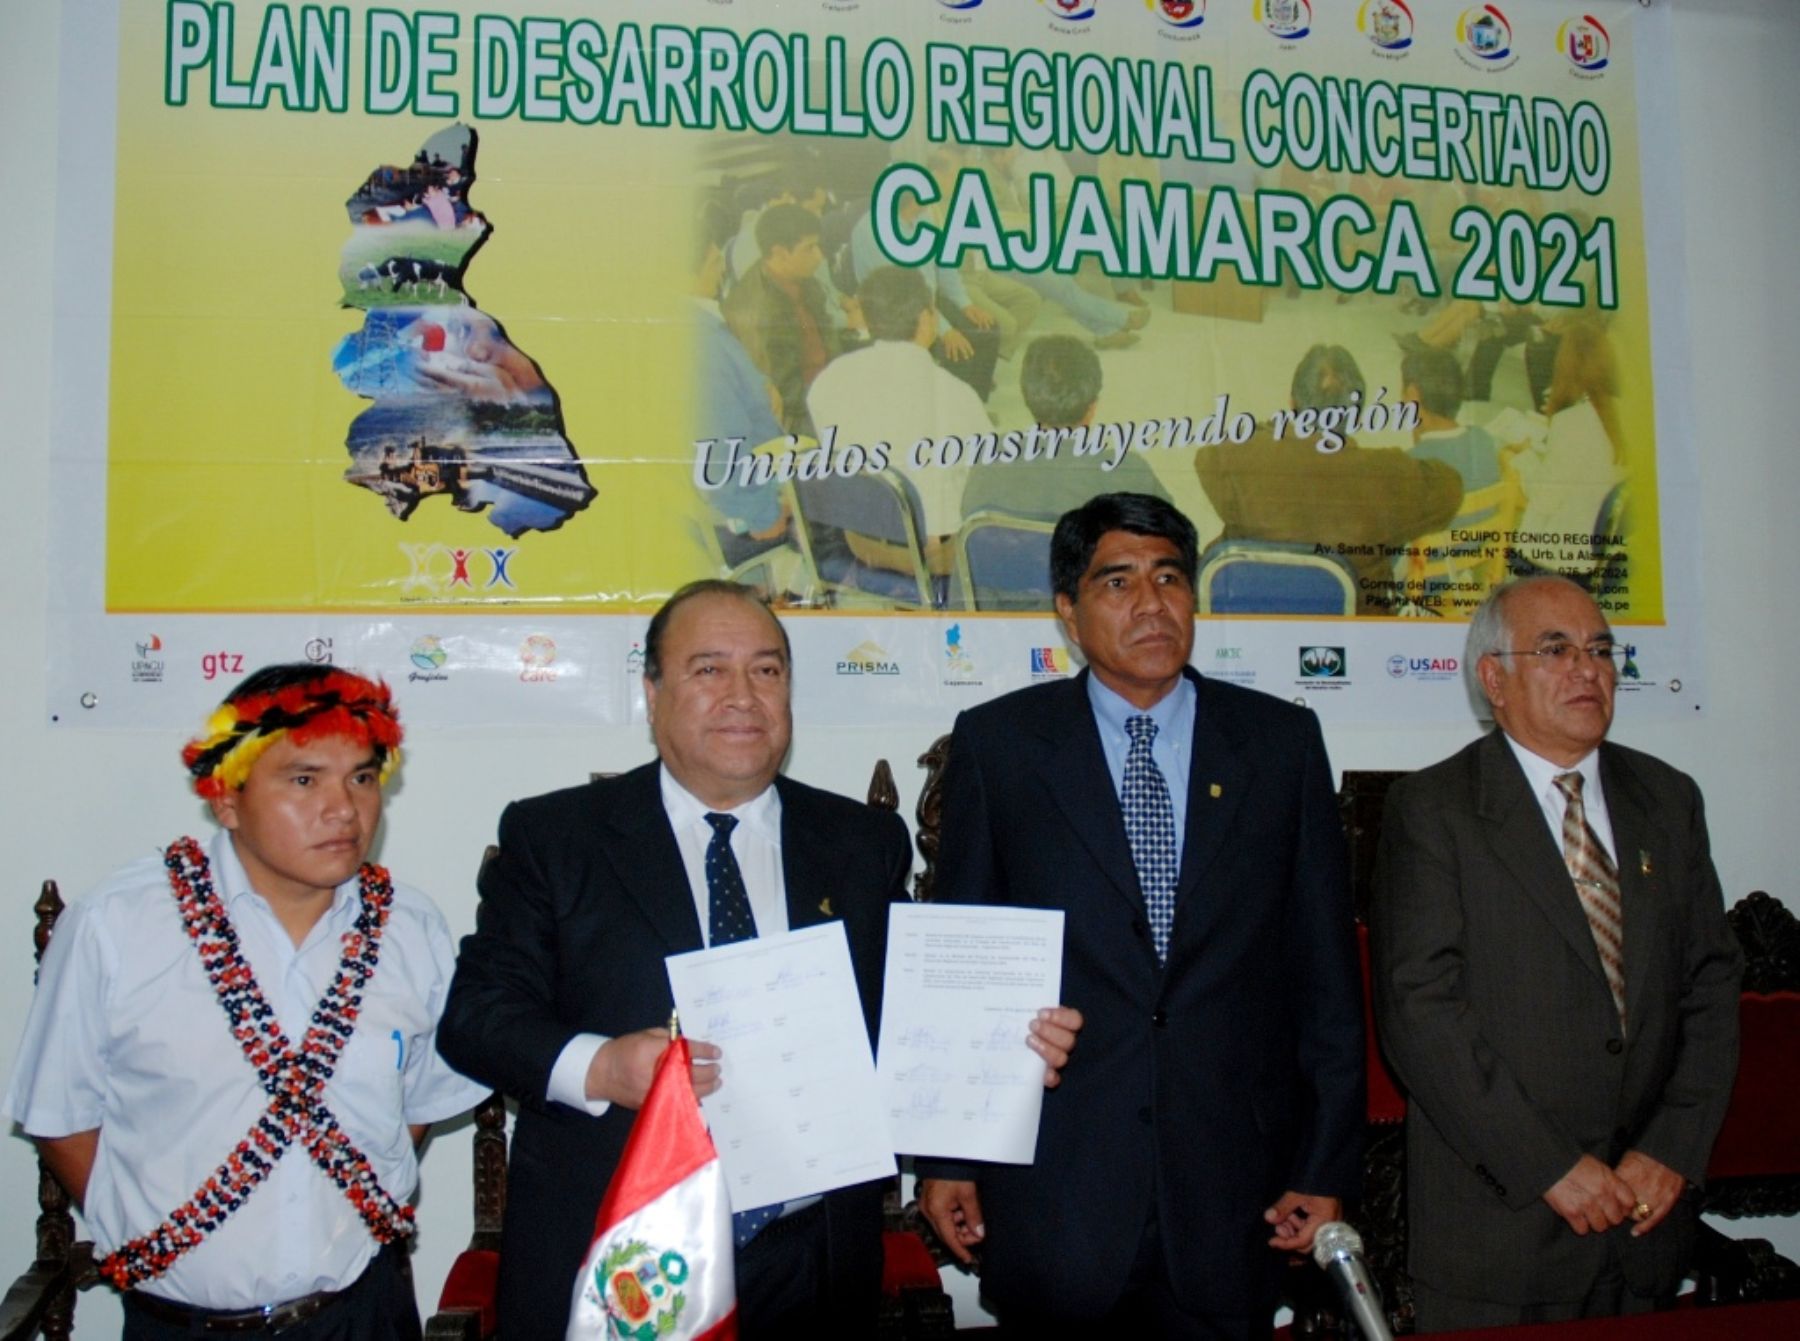 El presidente regional de Cajamarca, Jesús Coronel Salirrosas, presentó hoy Plan de Desarrollo Regional Concertado 2021. Foto: ANDINA / Eduard Lozano.